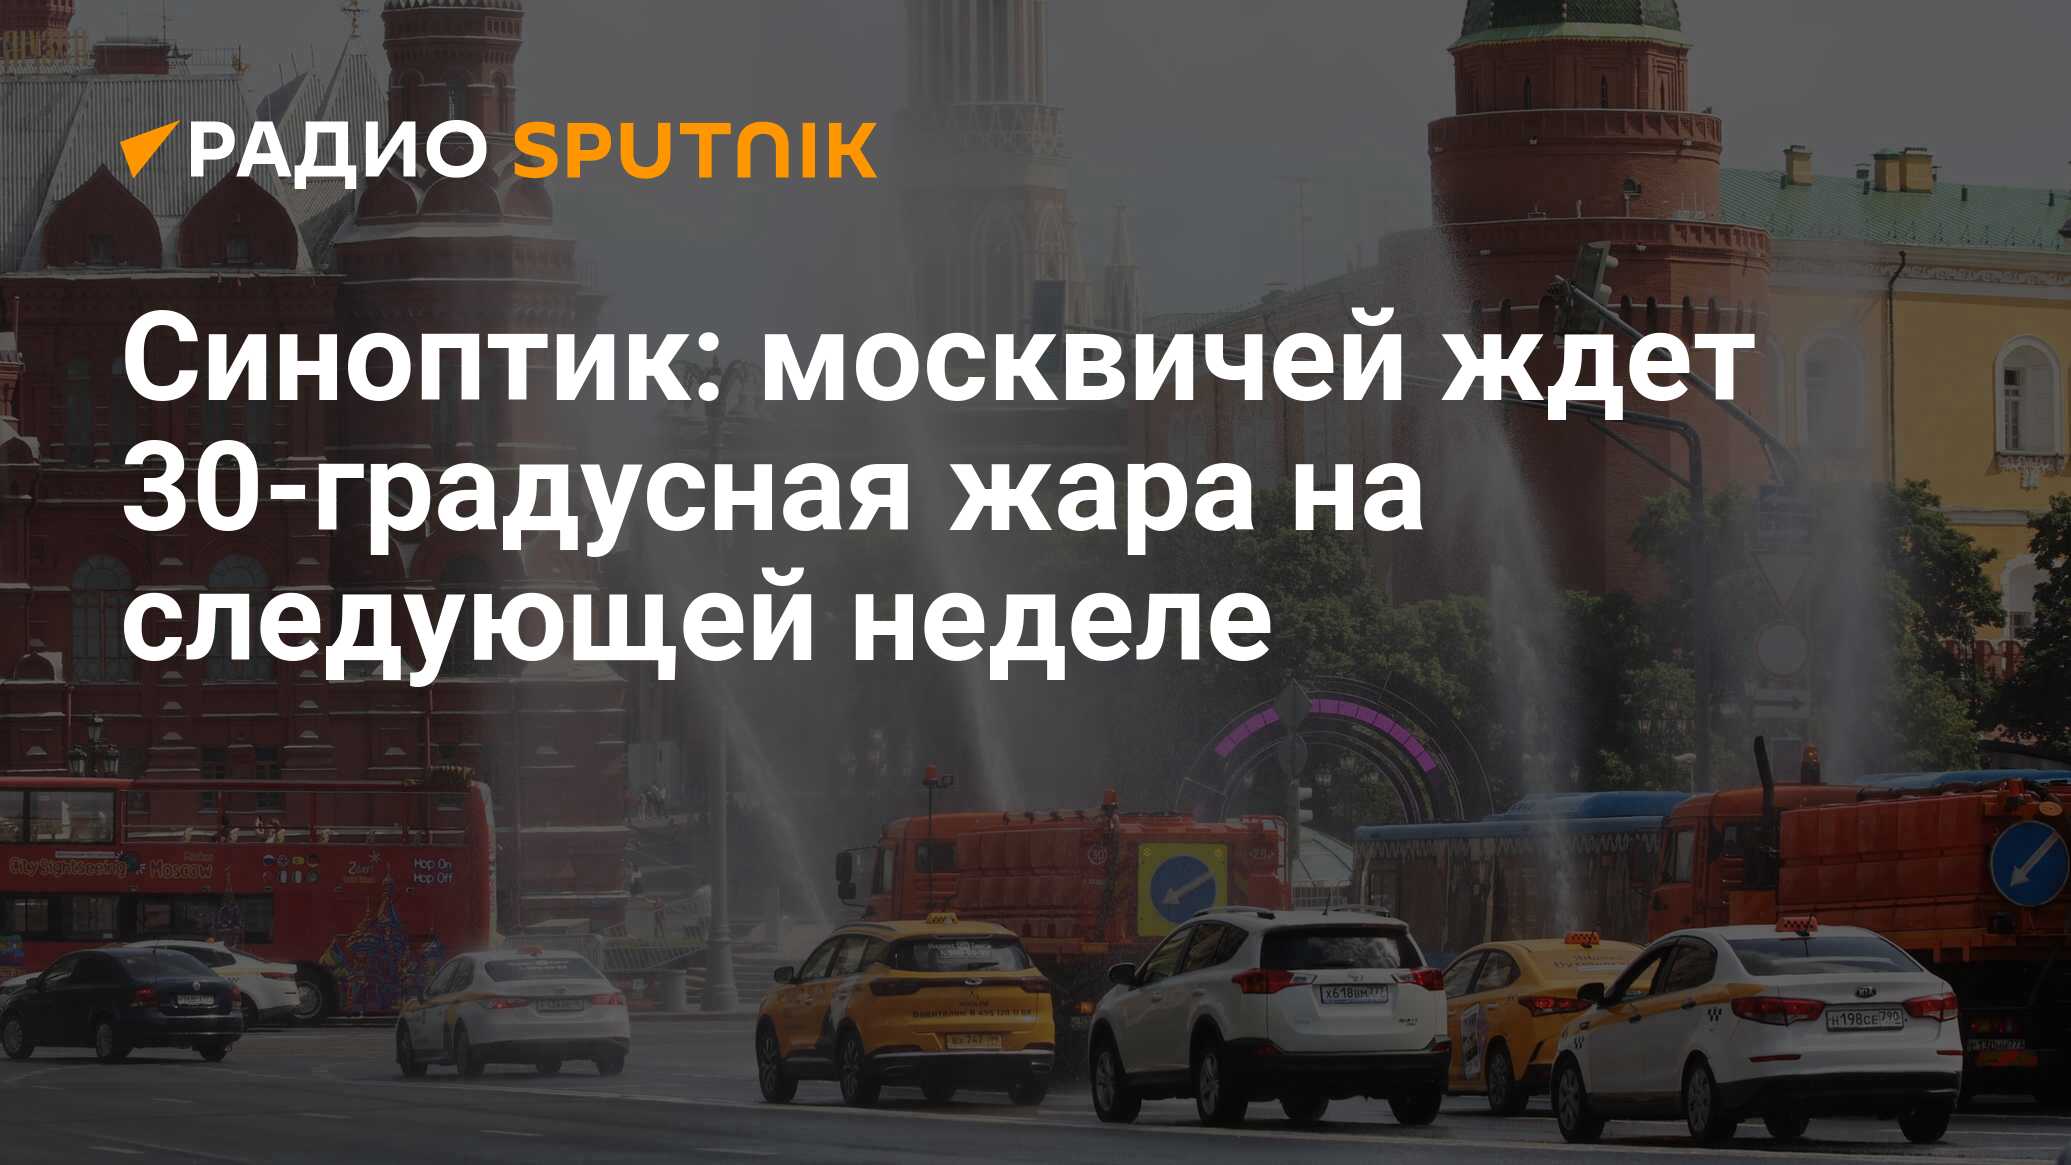 Самая жаркая погода в Москве. Синоптики предупредили москвичей о приходе 30-градусной жары.